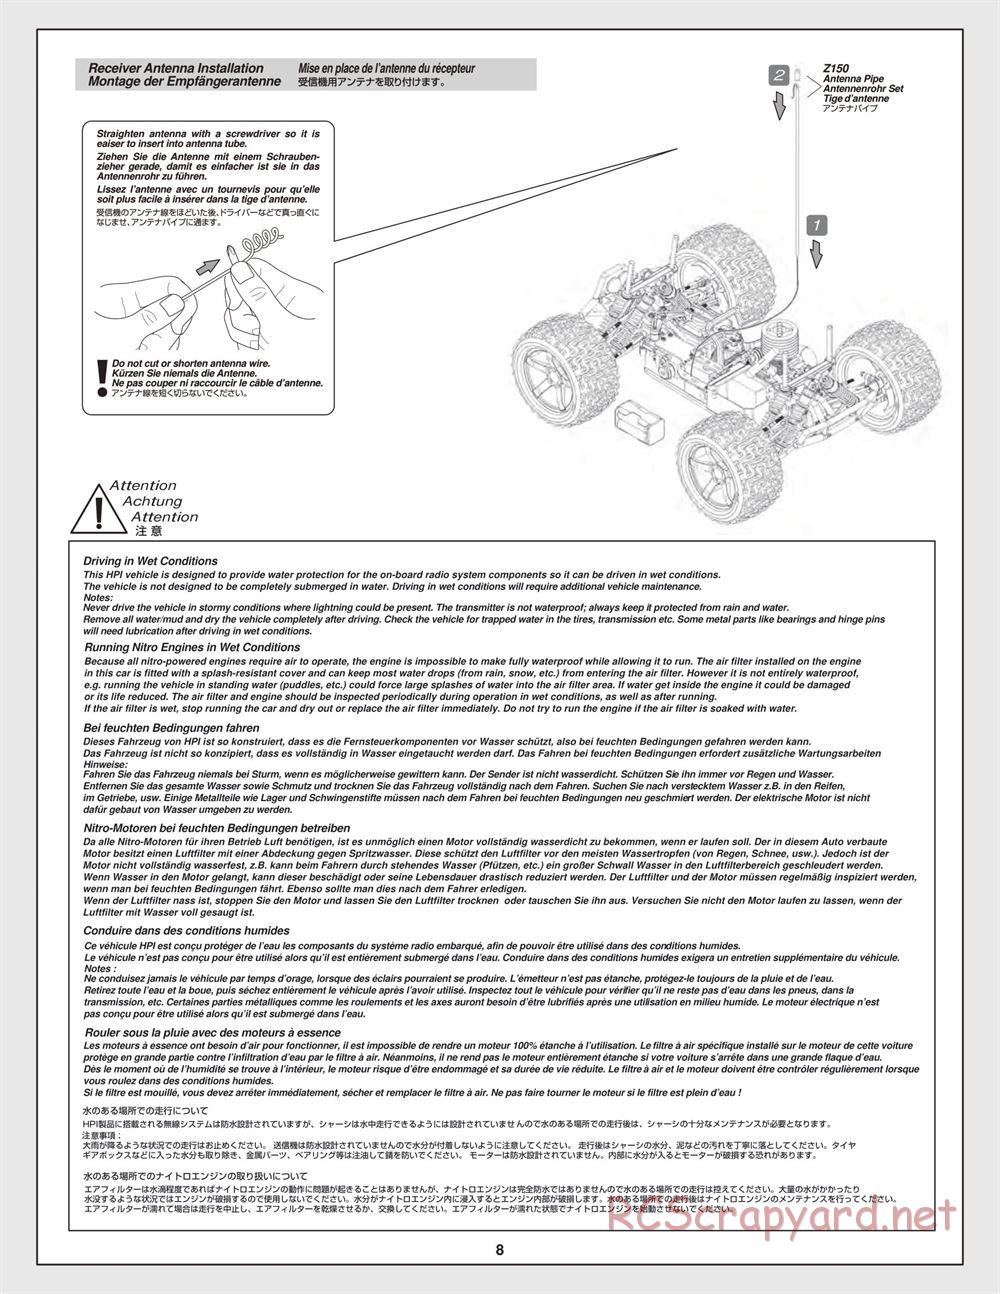 HPI - Bullet MT 3.0 - Manual - Page 8